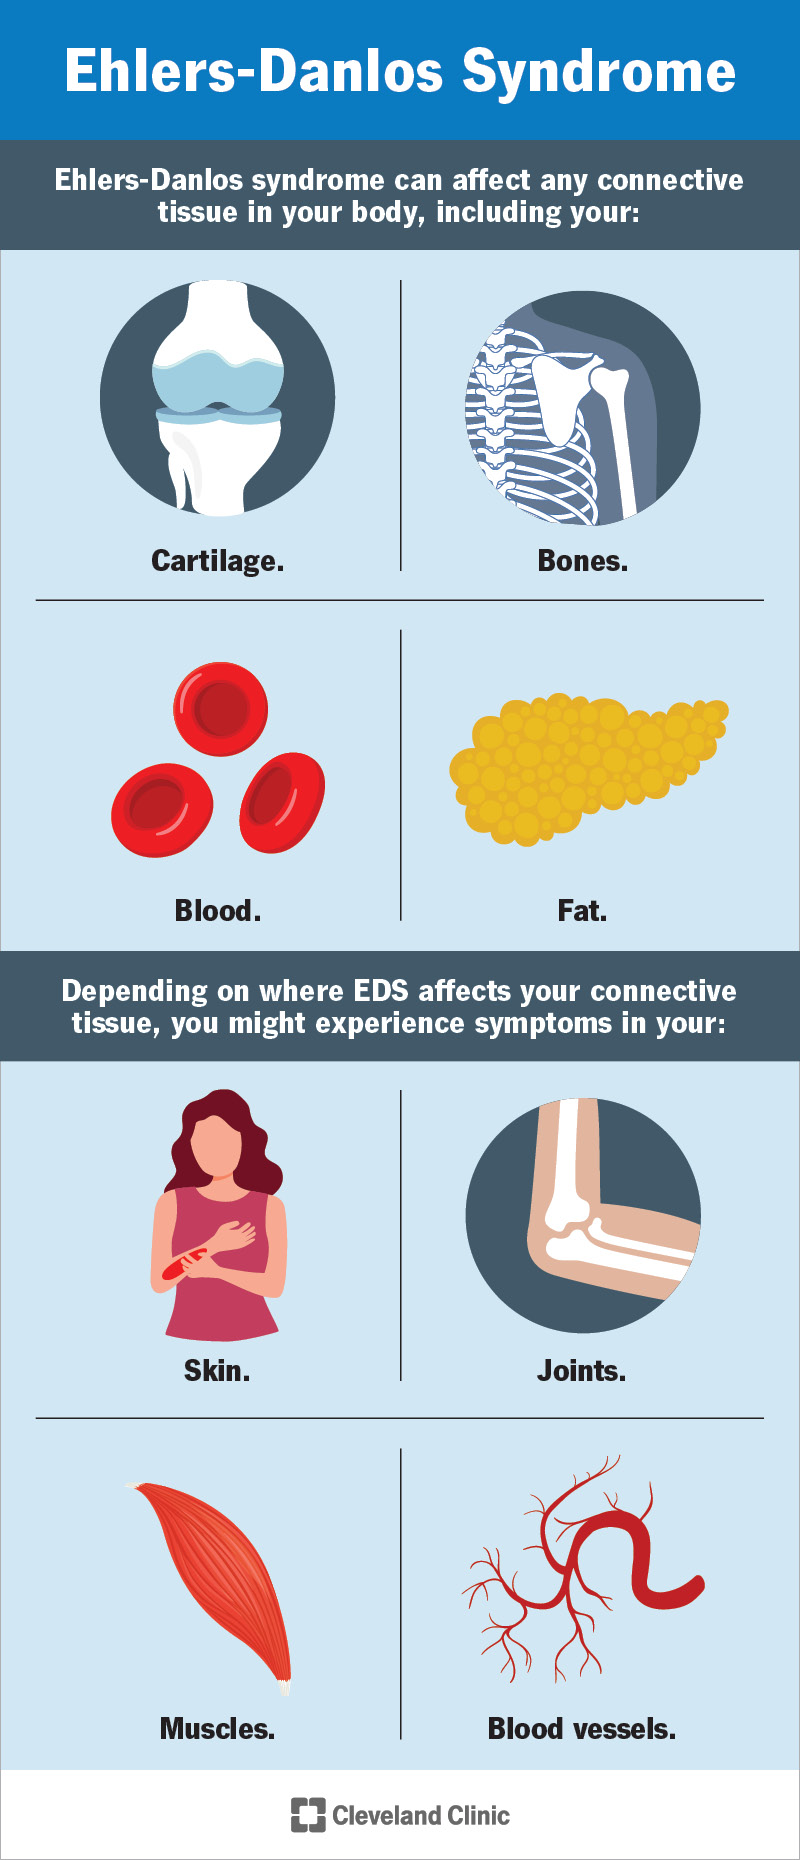 La sindrome di Ehlers-Danlos può colpire i tessuti di tutto il corpo e causare molti sintomi diversi.